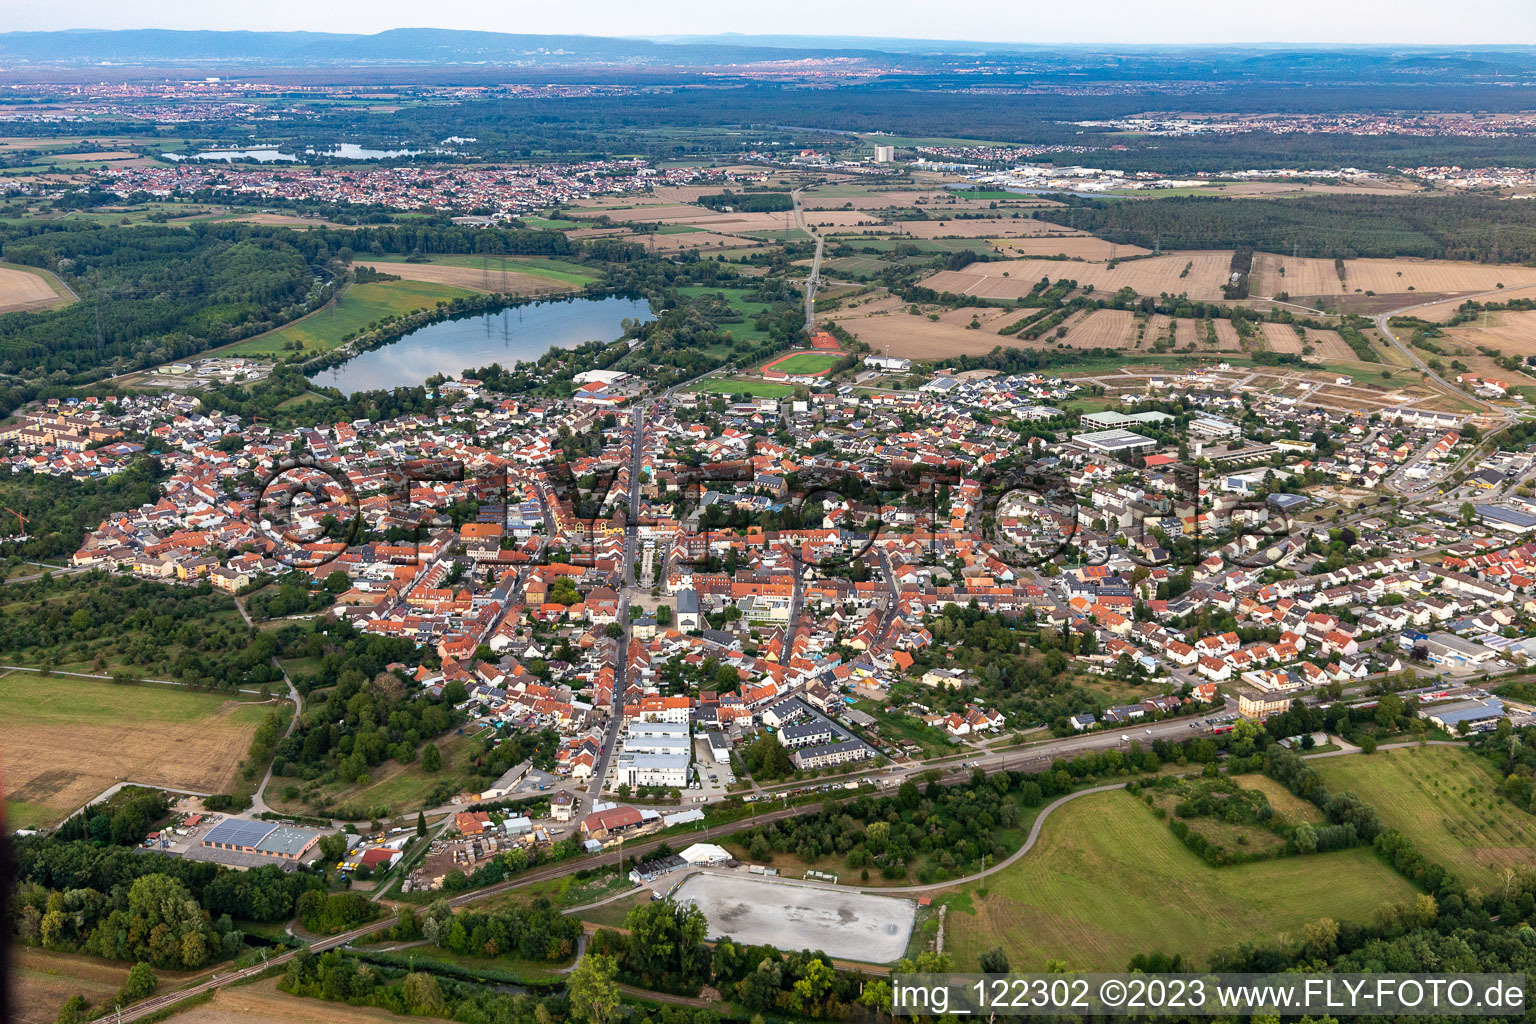 Vue aérienne de Vue des rues et des maisons des quartiers résidentiels à Philippsburg dans le département Bade-Wurtemberg, Allemagne